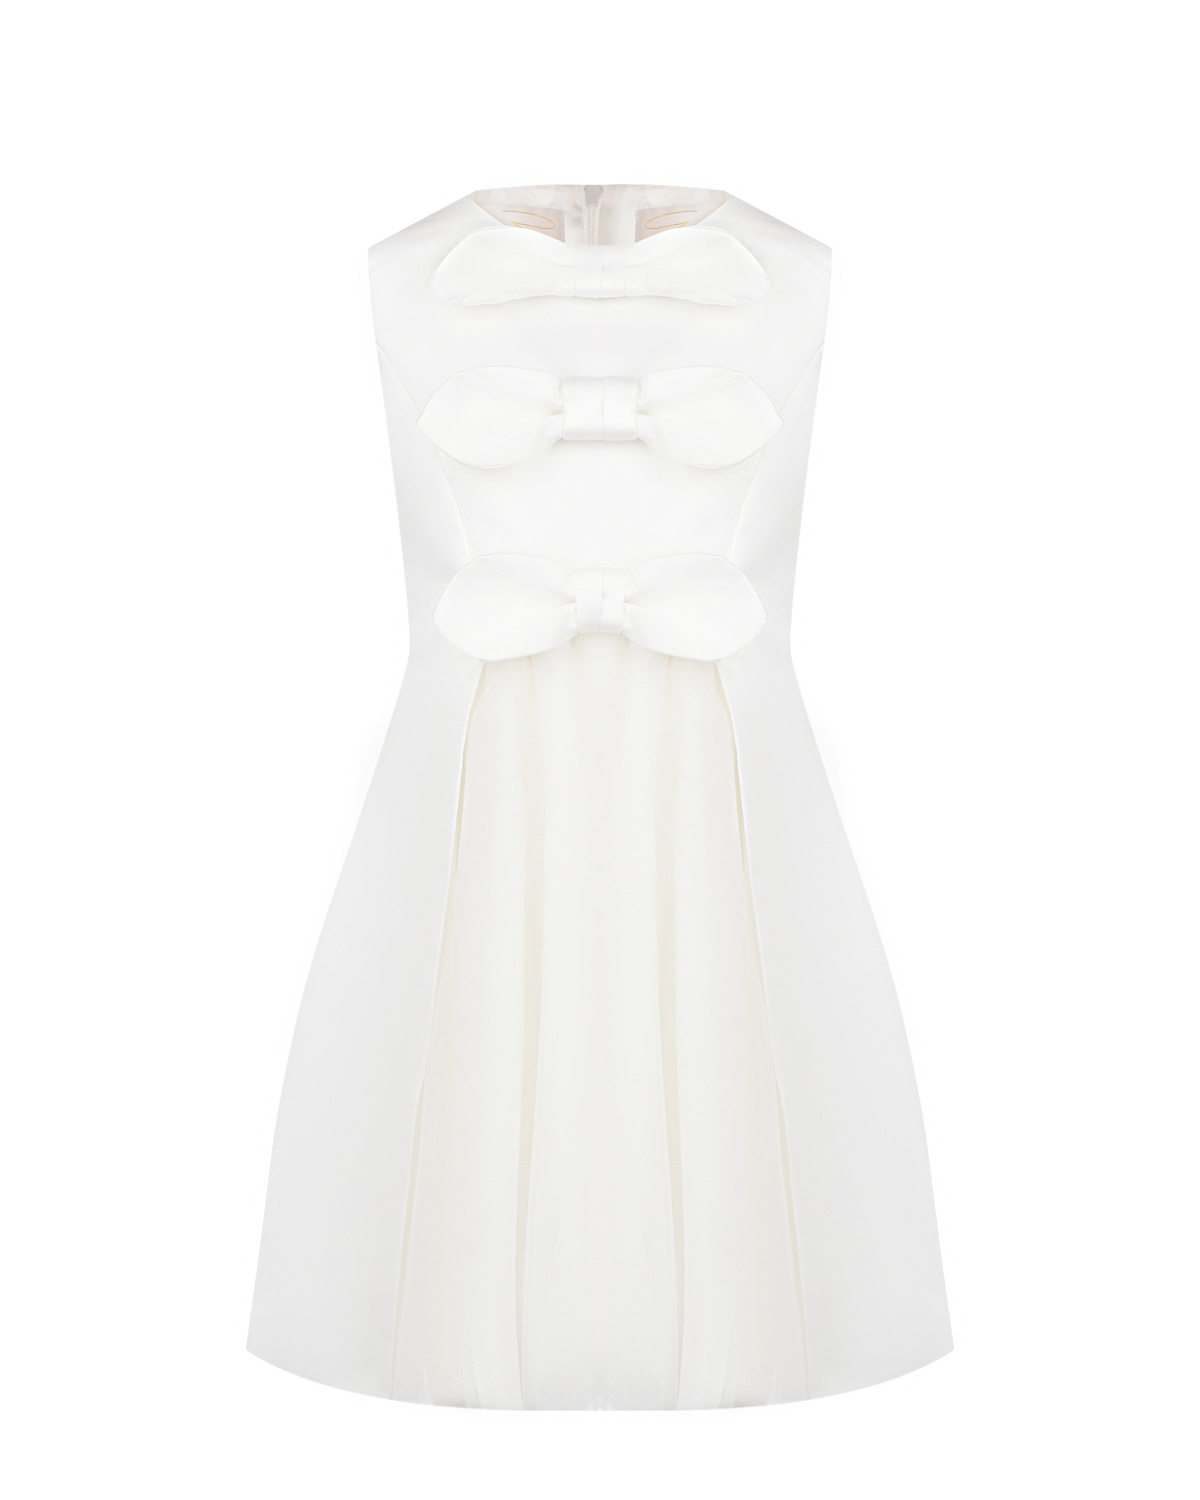 Белое платье с бантами Genny, размер 116, цвет белый - фото 1